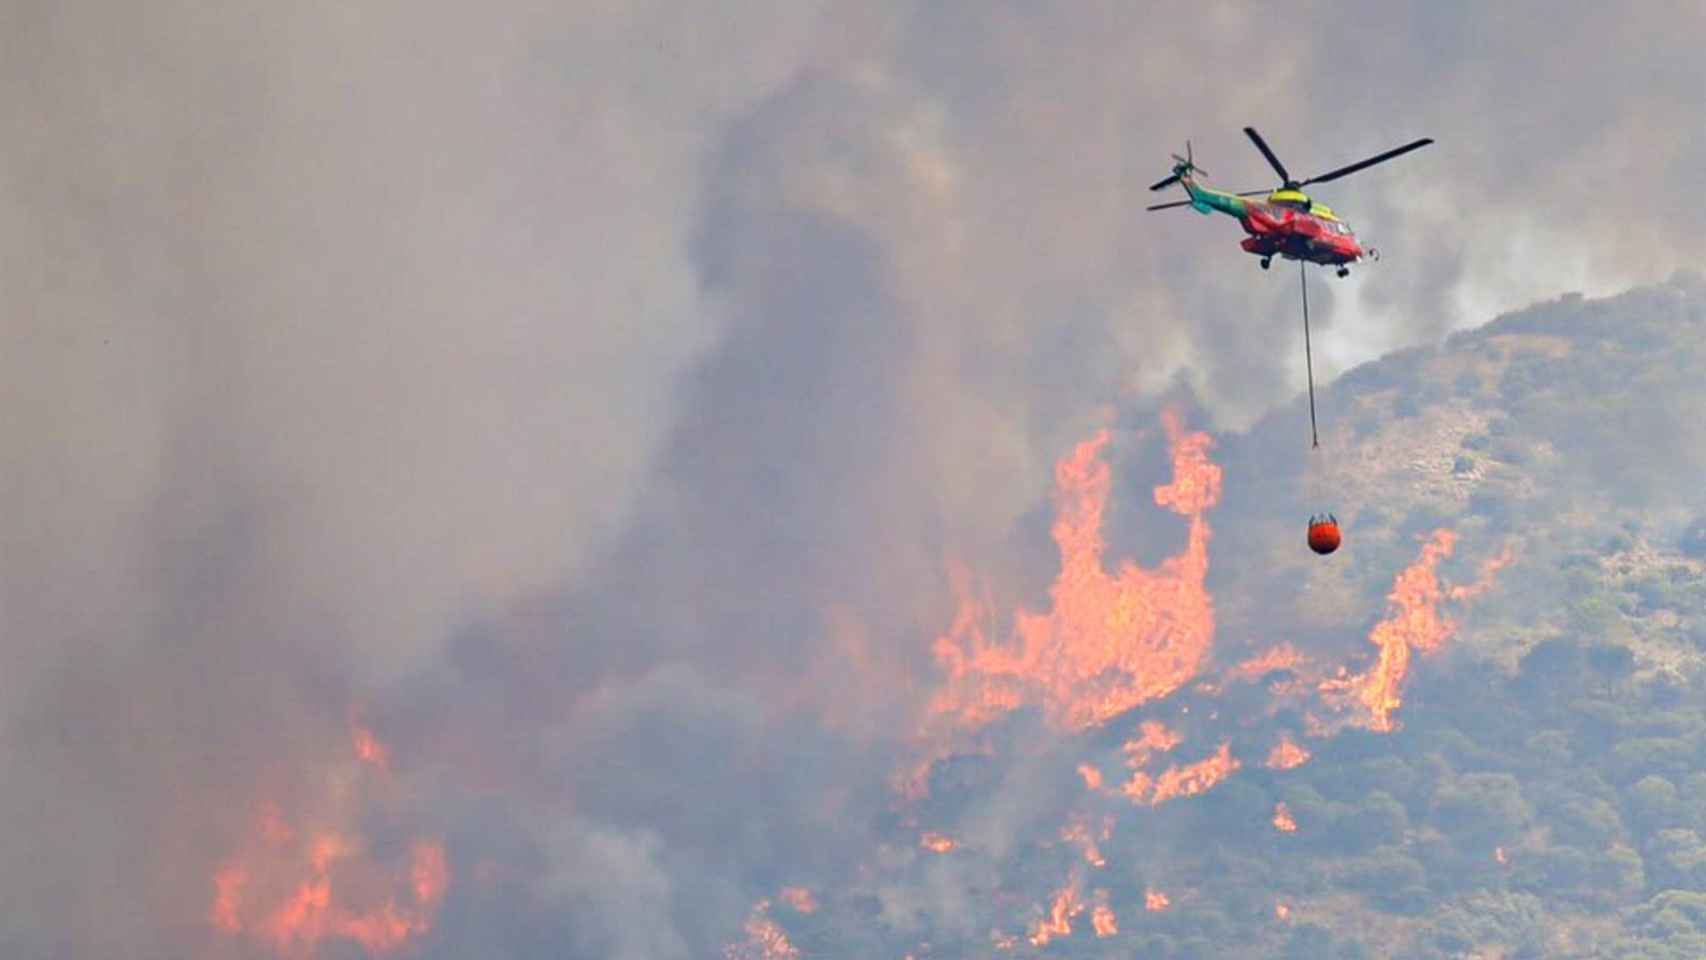 Una imagen del incendio en la Sierra de Mijas.